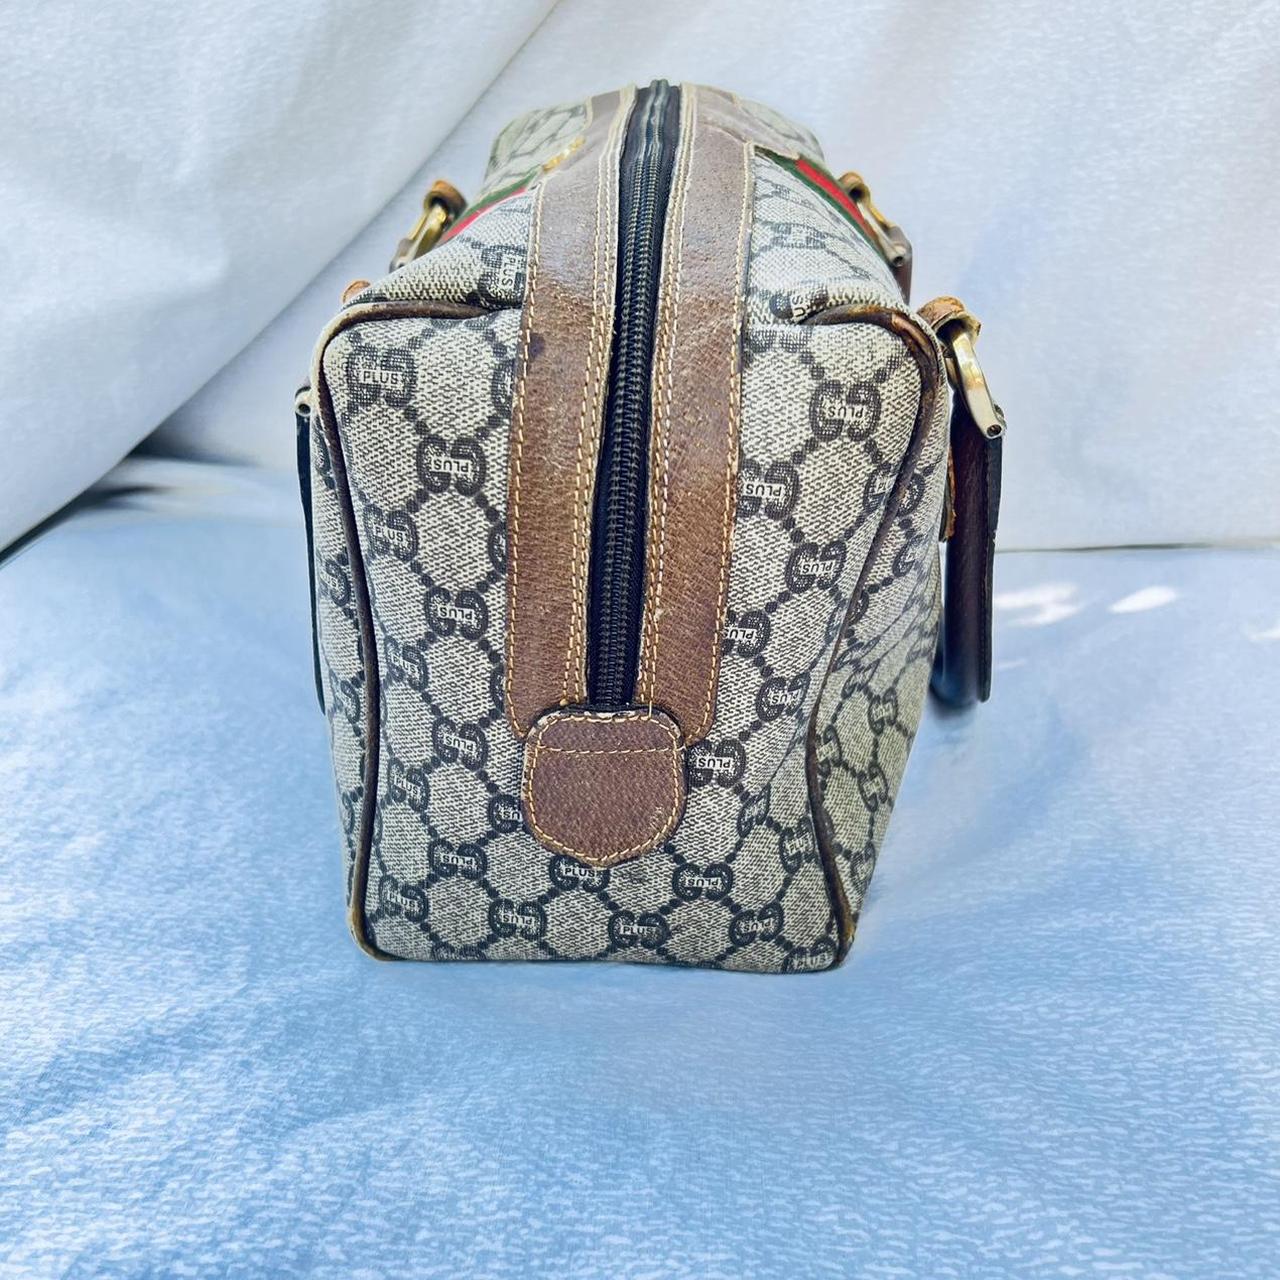 Classic Gucci Marmont mini meteleassé shoulder bag - Depop